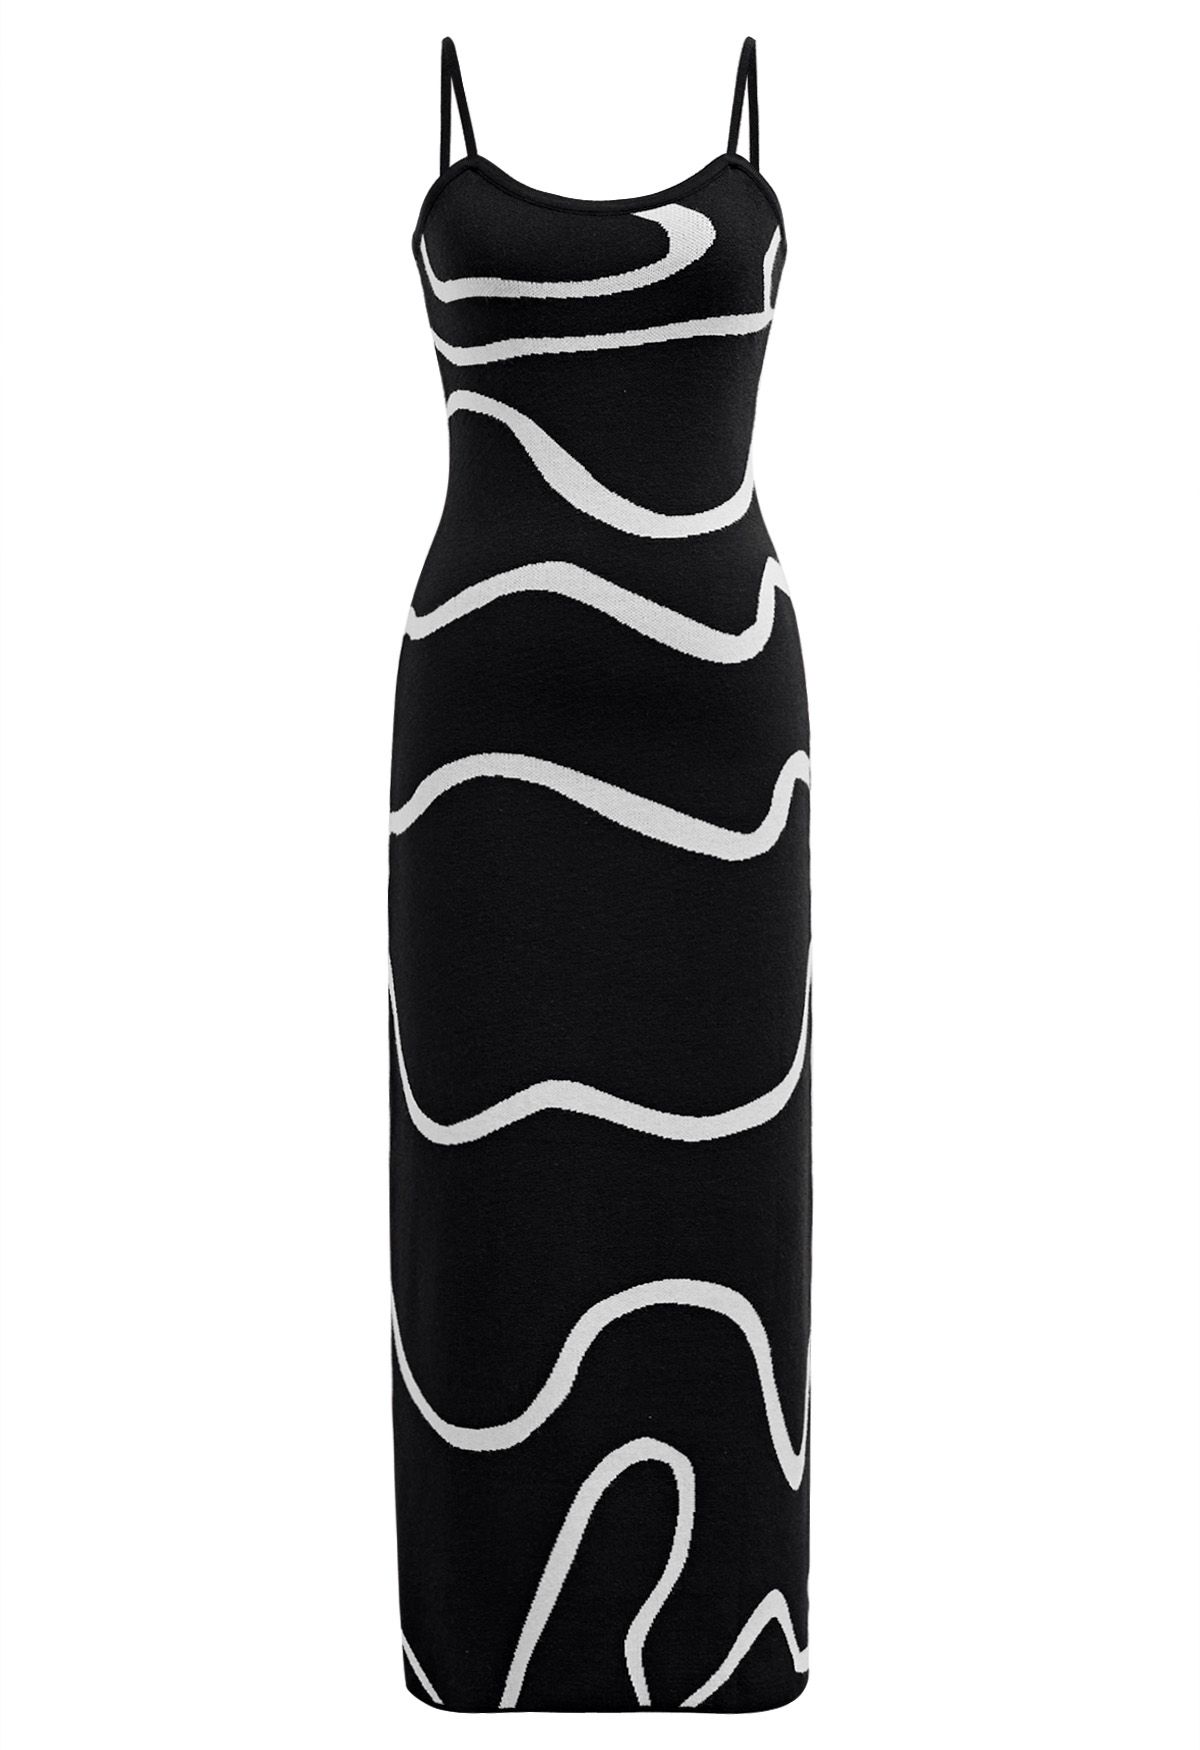 Wavy Print Knit Cami Dress in Black